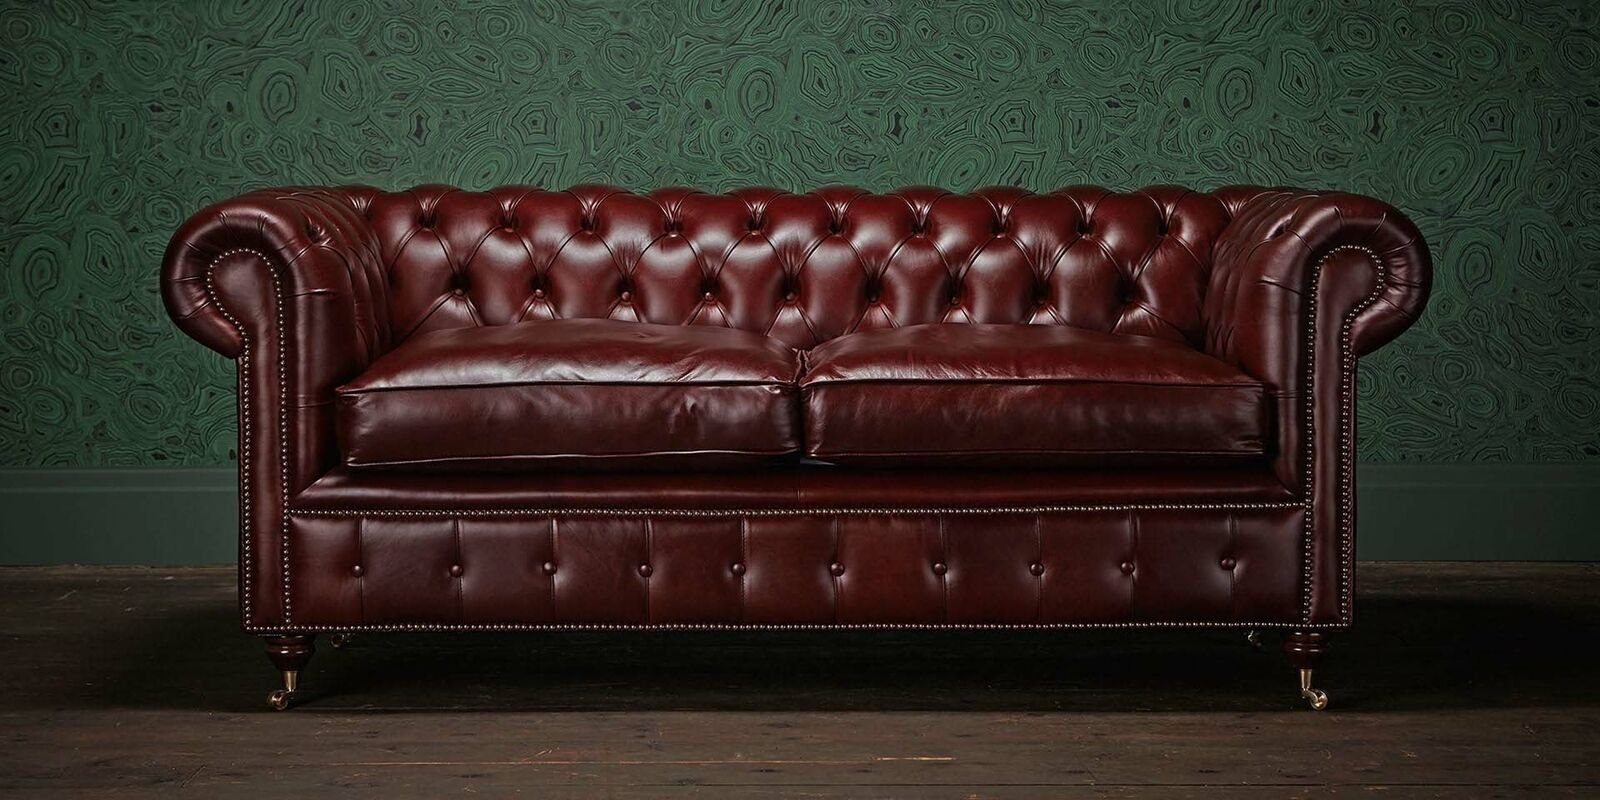 JVmoebel 2-Sitzer Chesterfield Design Luxus Polster Sofa Couch Sitz Garnitur Leder #Z5, Chesterfield Design Luxus Polster Sofa Couch Sitz Garnitur